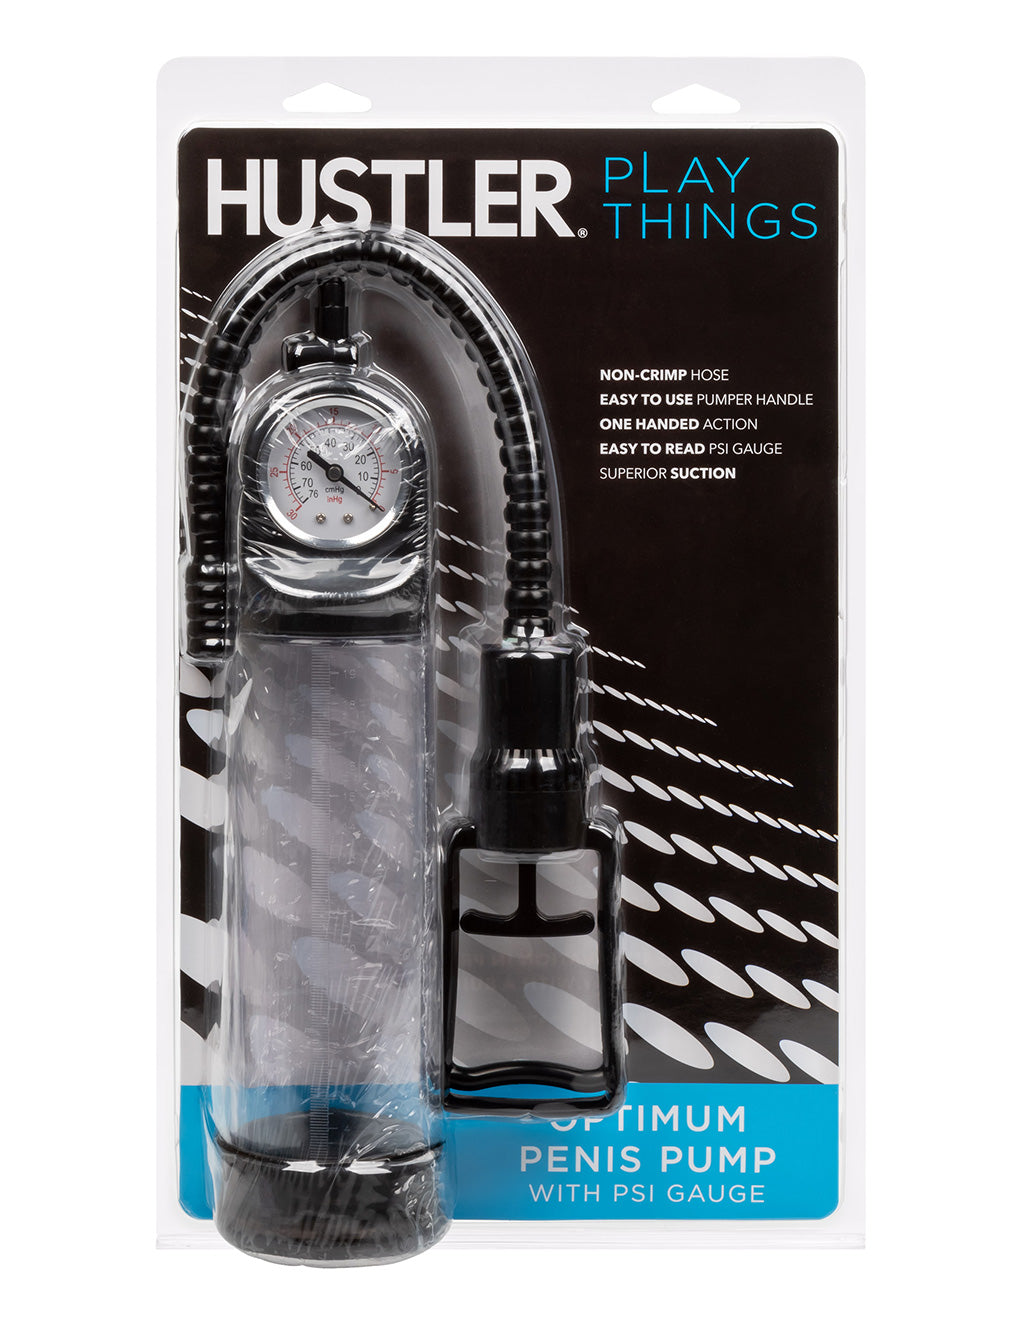 Hustler® Playthings Optimum Penis Pump- Front package